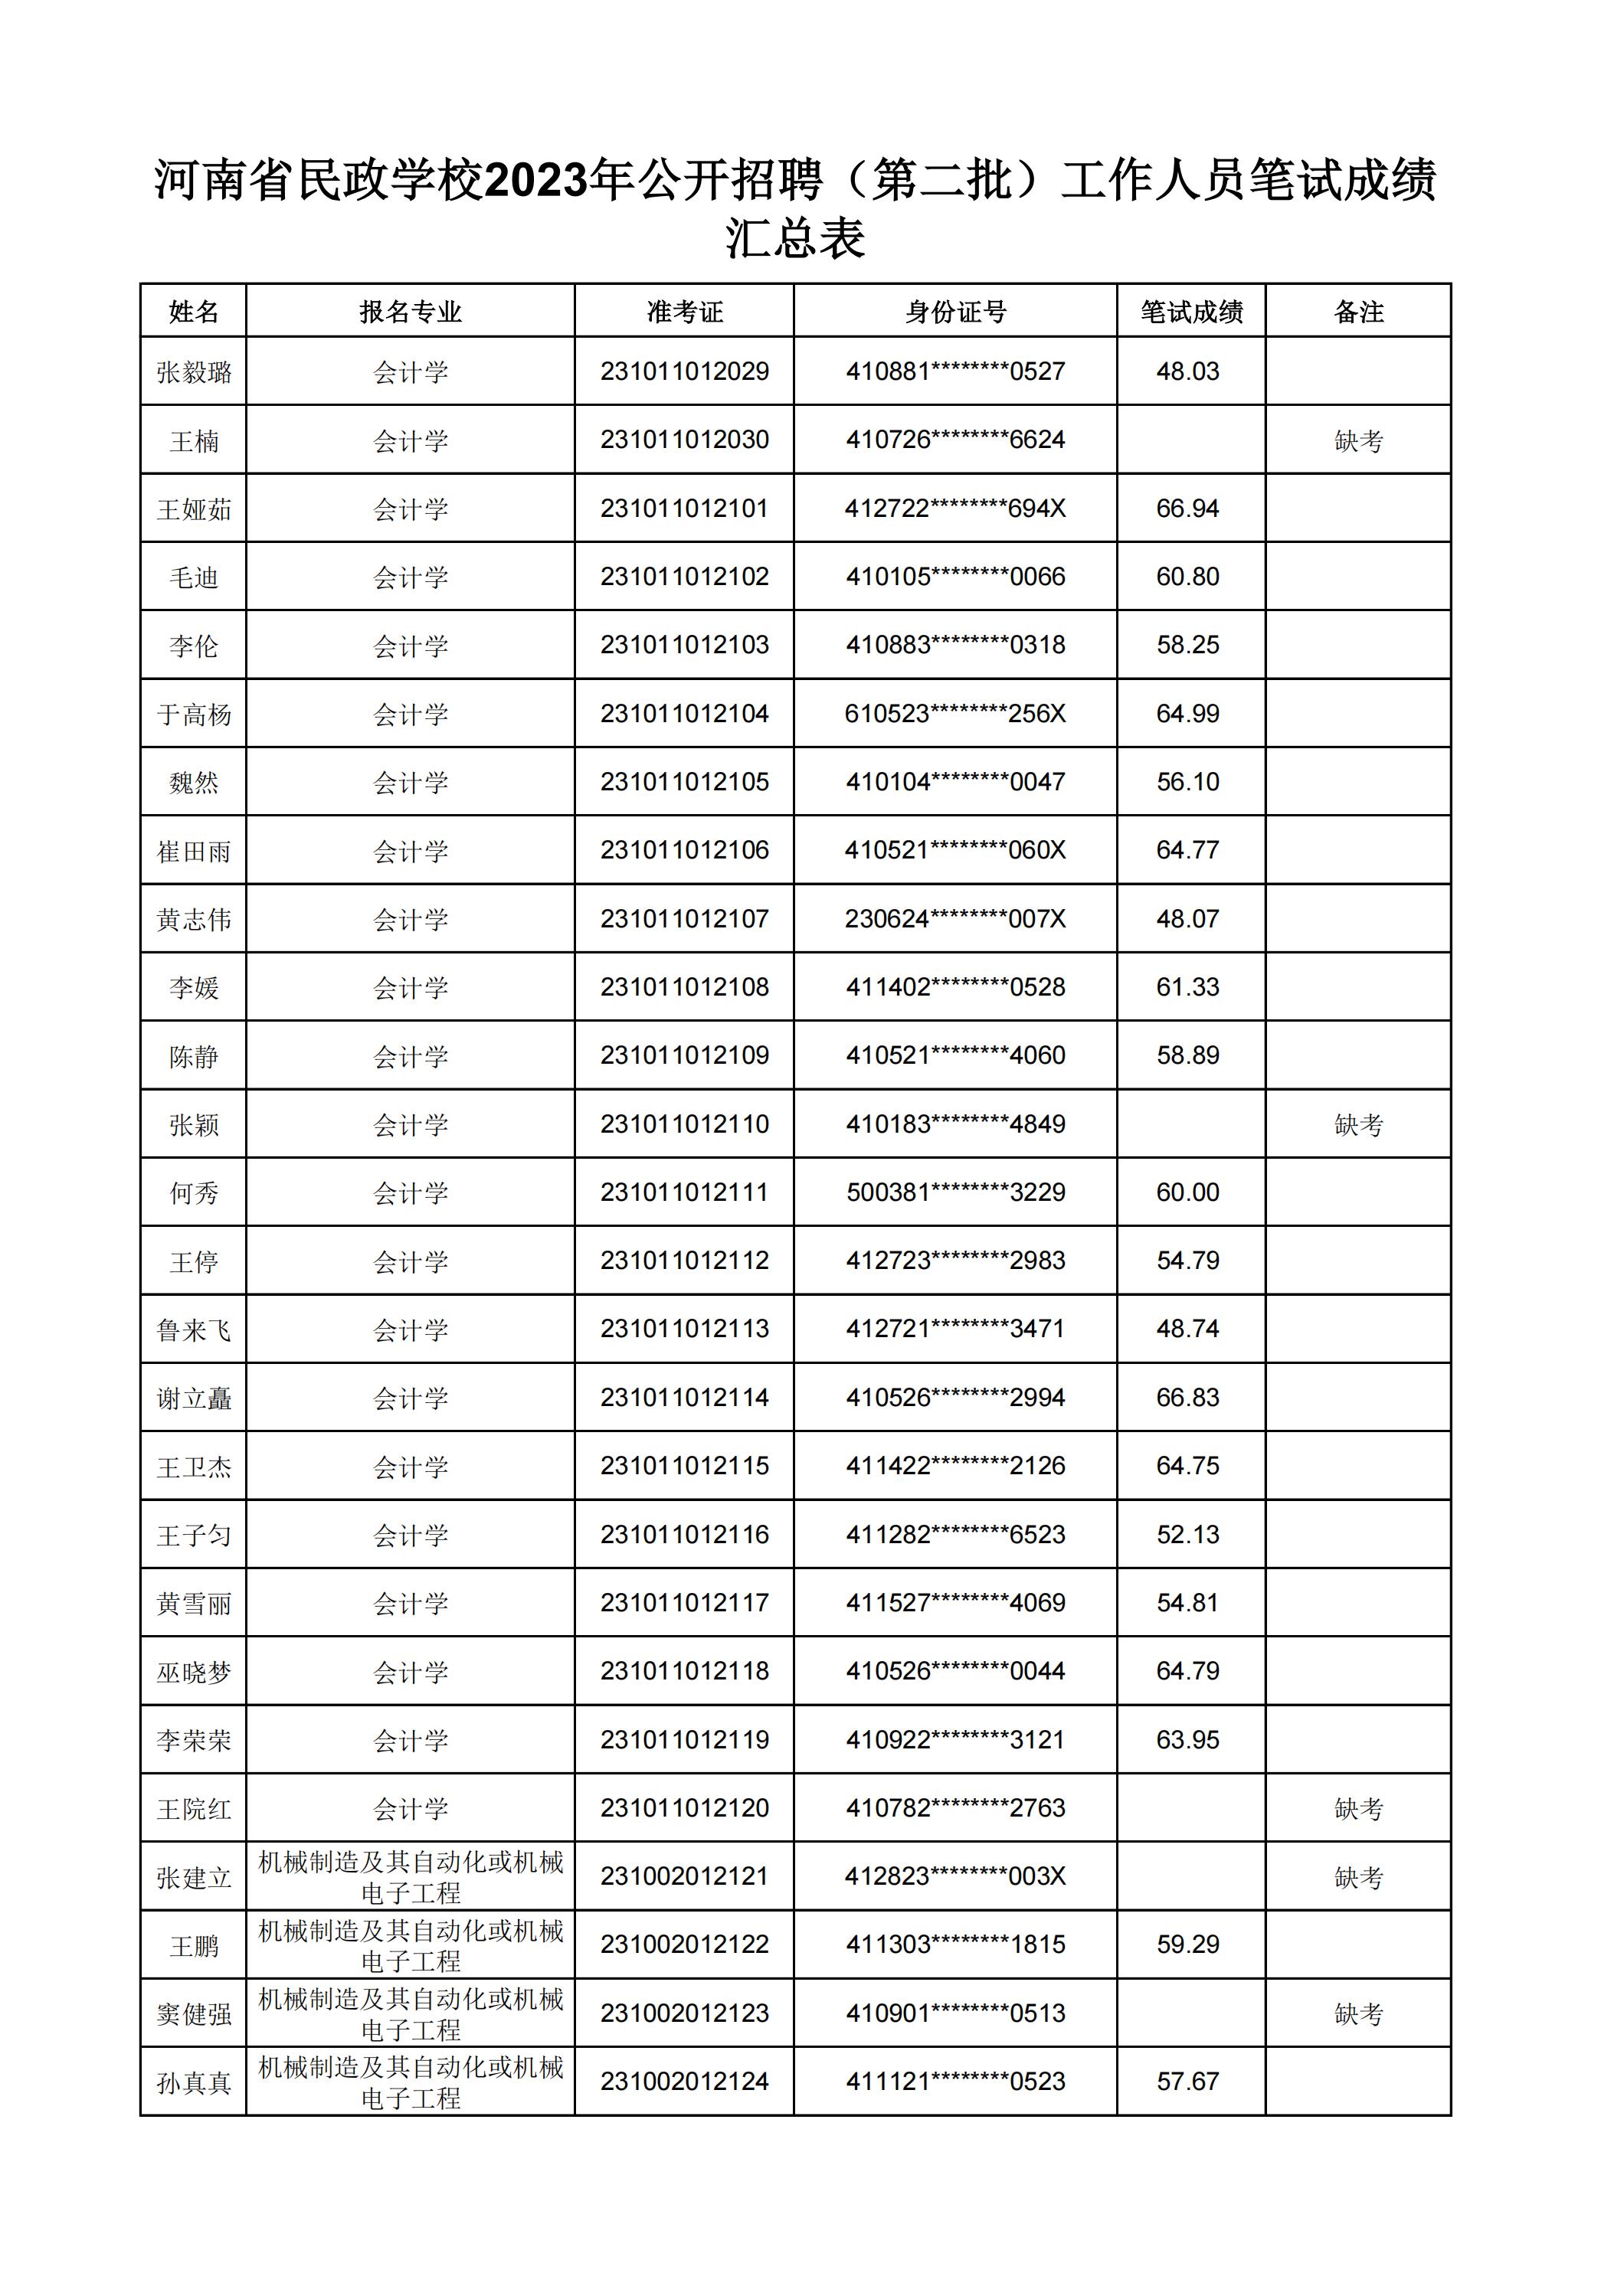 河南省民政学校2023年公开招聘（第二批）工作人员笔试成绩汇总表(2)_23.jpg